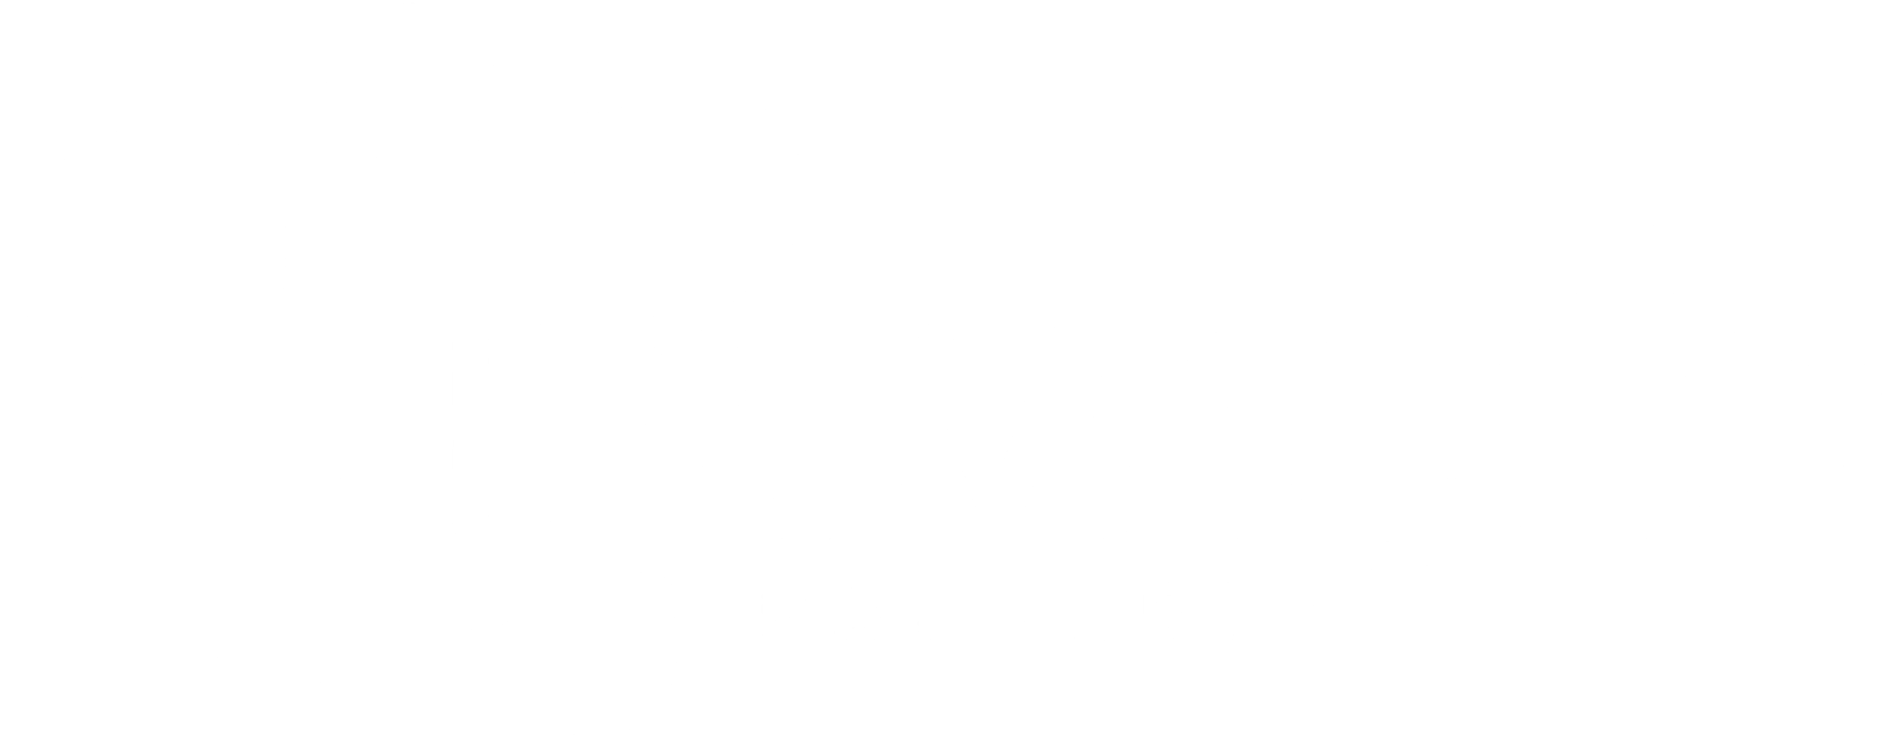 Logotipo do inovação Barueri